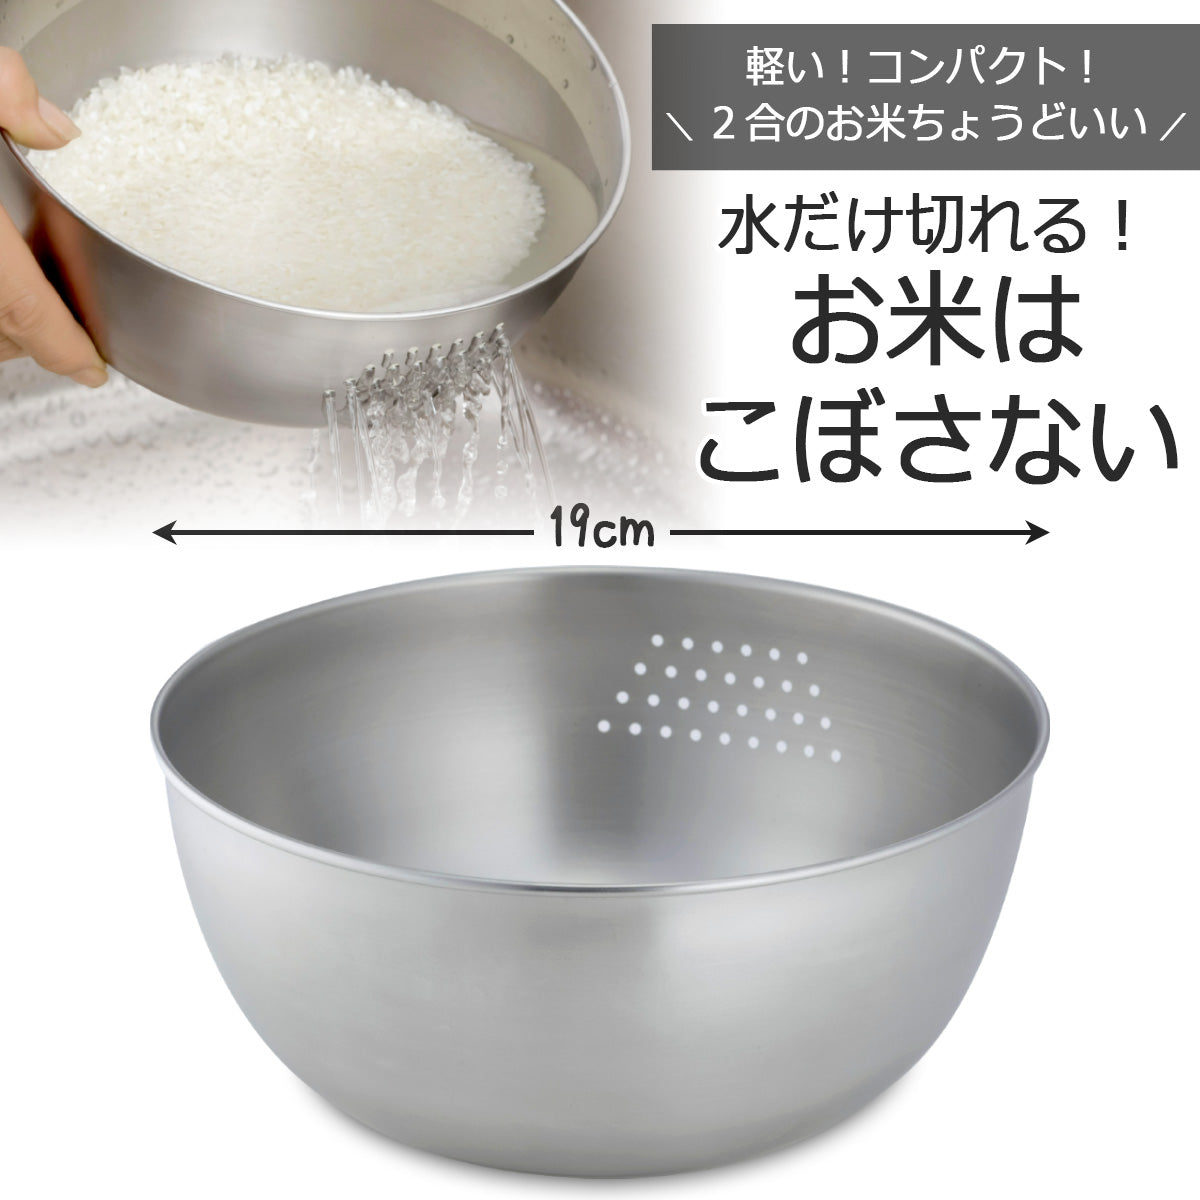 【預購】日本製 下村企販 不銹鋼洗米洗菜碗 (18cm) - Cnjpkitchen ❤️ 🇯🇵日本廚具 家居生活雜貨店